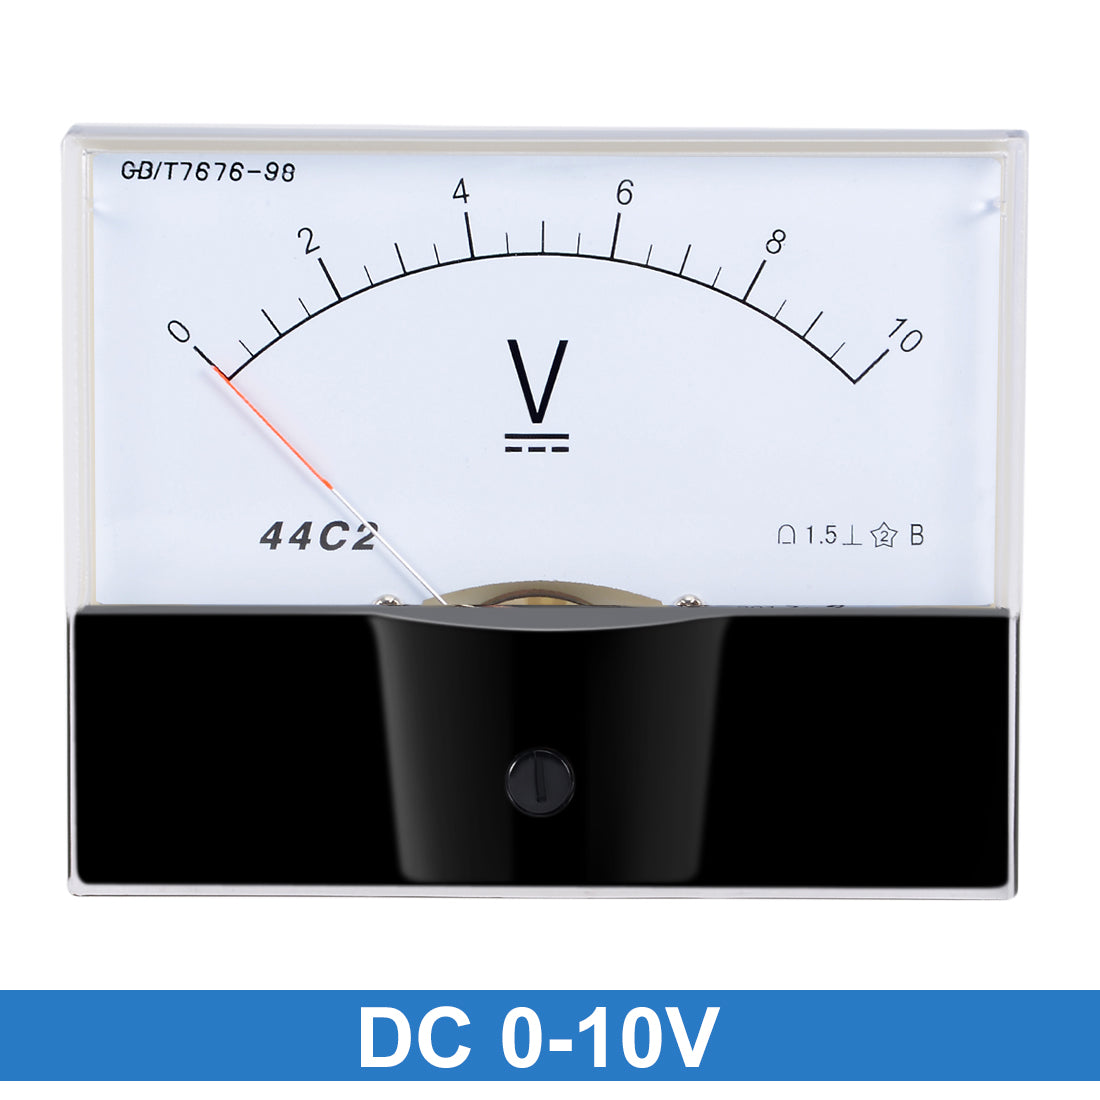 uxcell Uxcell DC 0-10V Analog Panel Voltage Gauge Volt Meter 44C2 1.5% Error